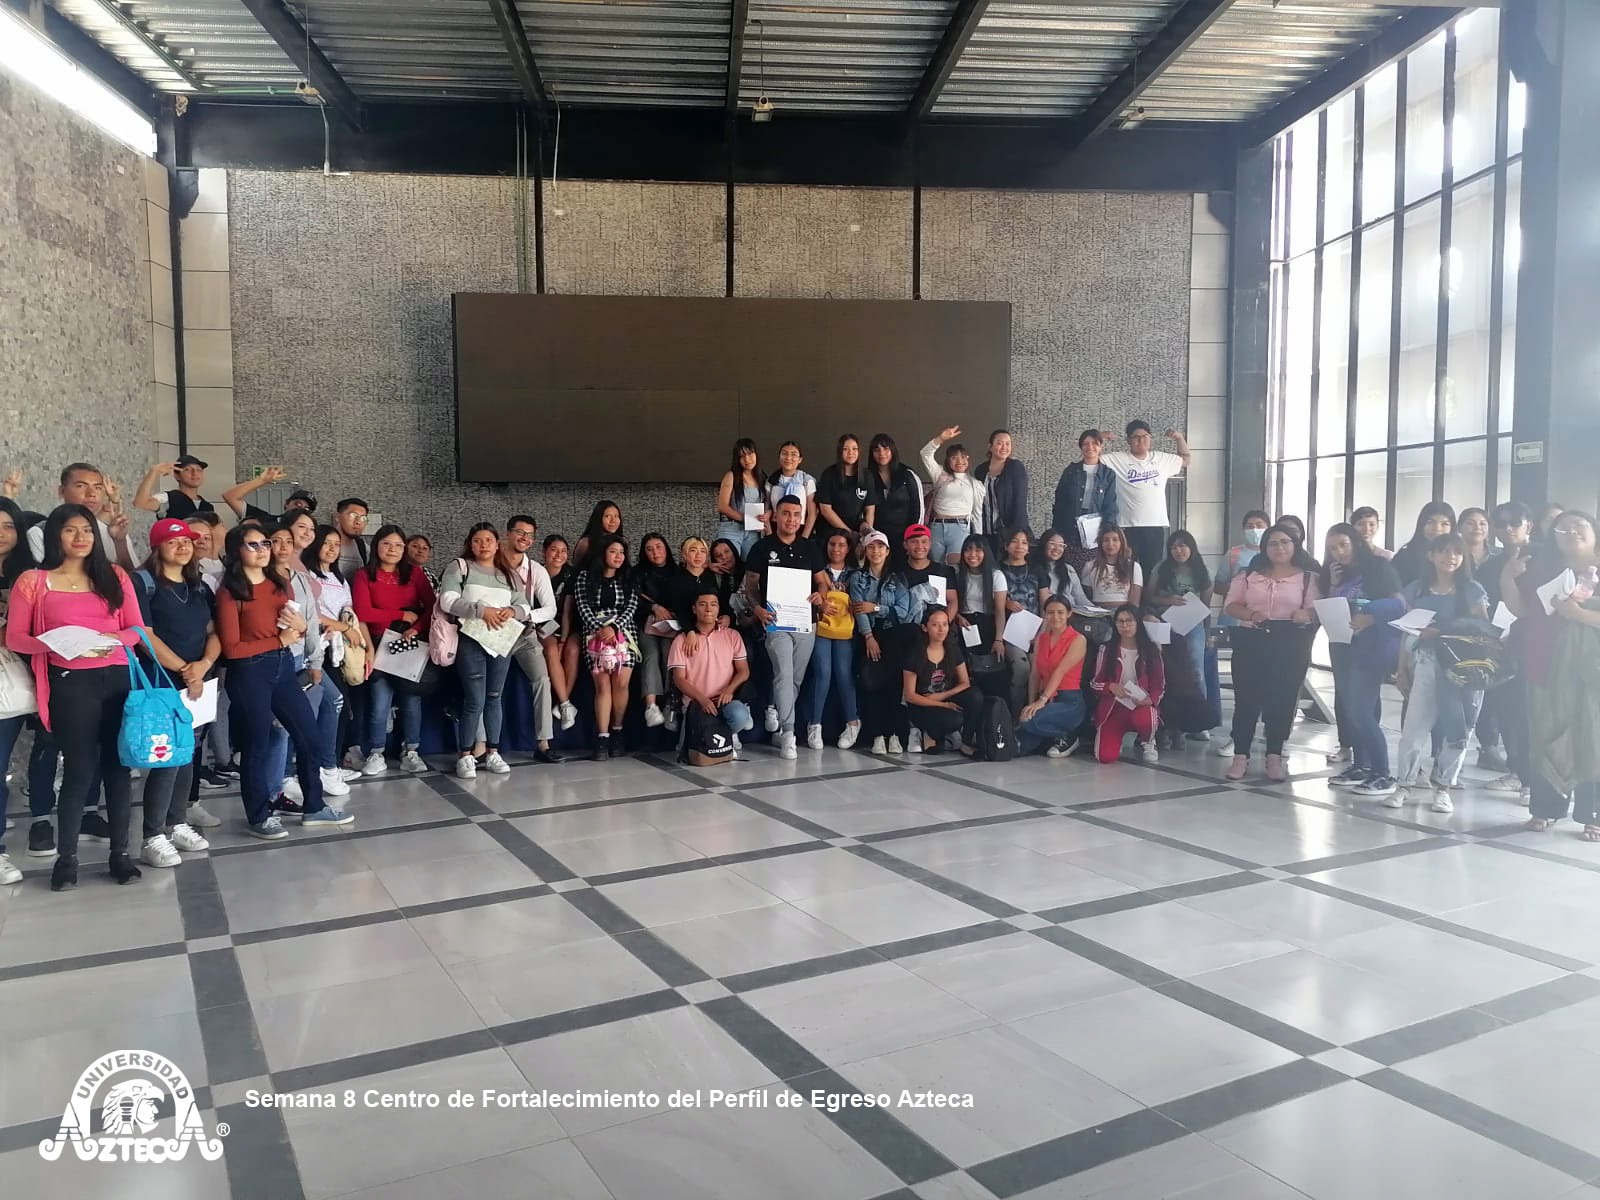 Semana 8: Centro de Fortalecimiento del Perfil de Egreso Azteca